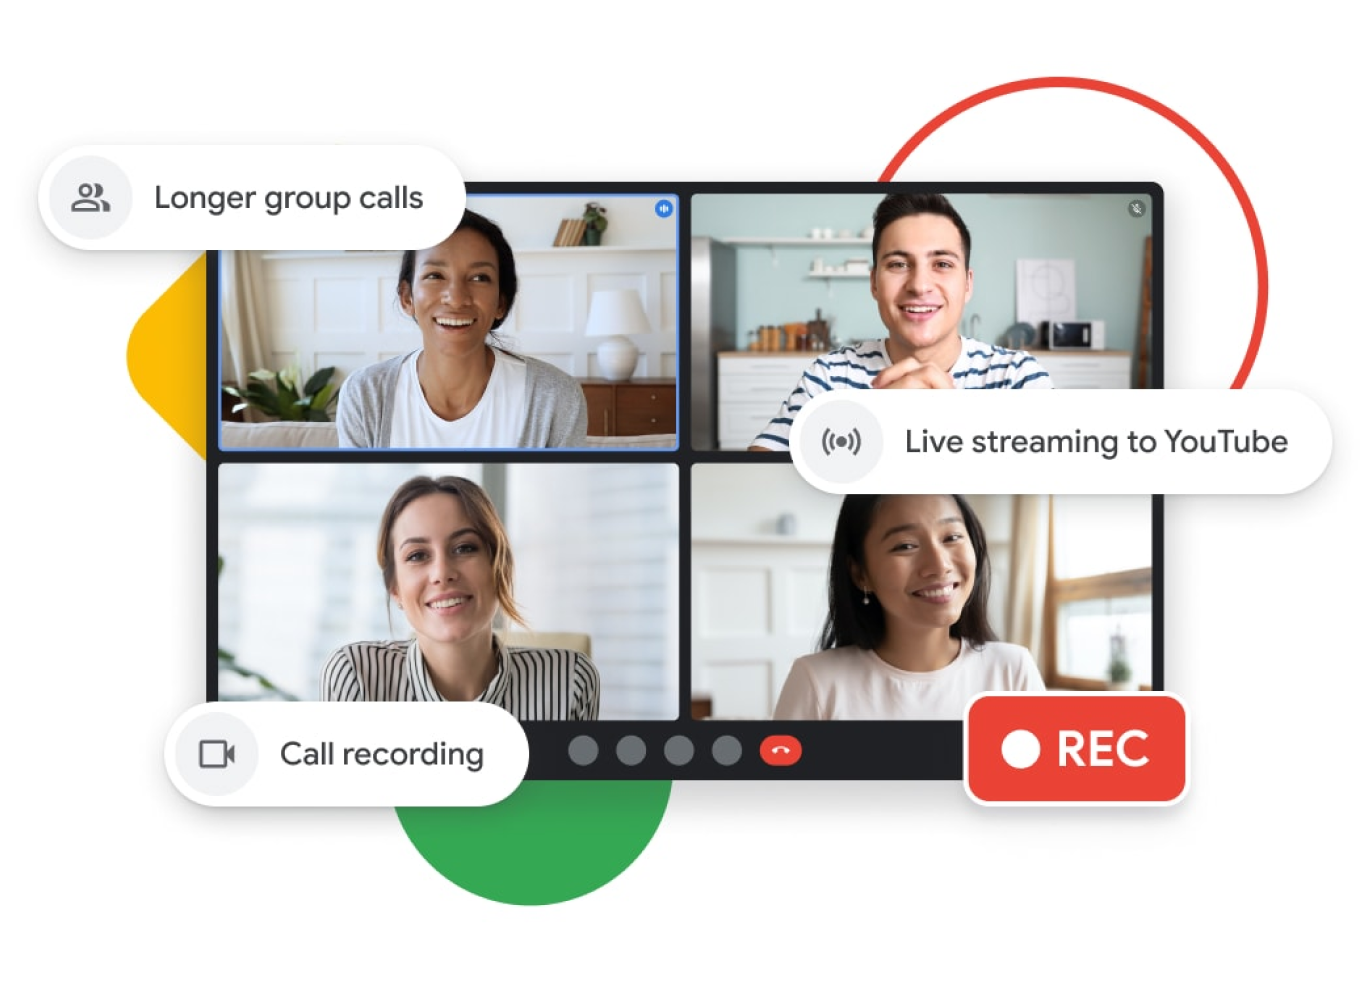 Hình minh hoạ một cuộc gọi qua Google Meet, trong đó có các tính năng như gọi nhóm lâu hơn, phát trực tiếp lên YouTube và ghi lại cuộc gọi.